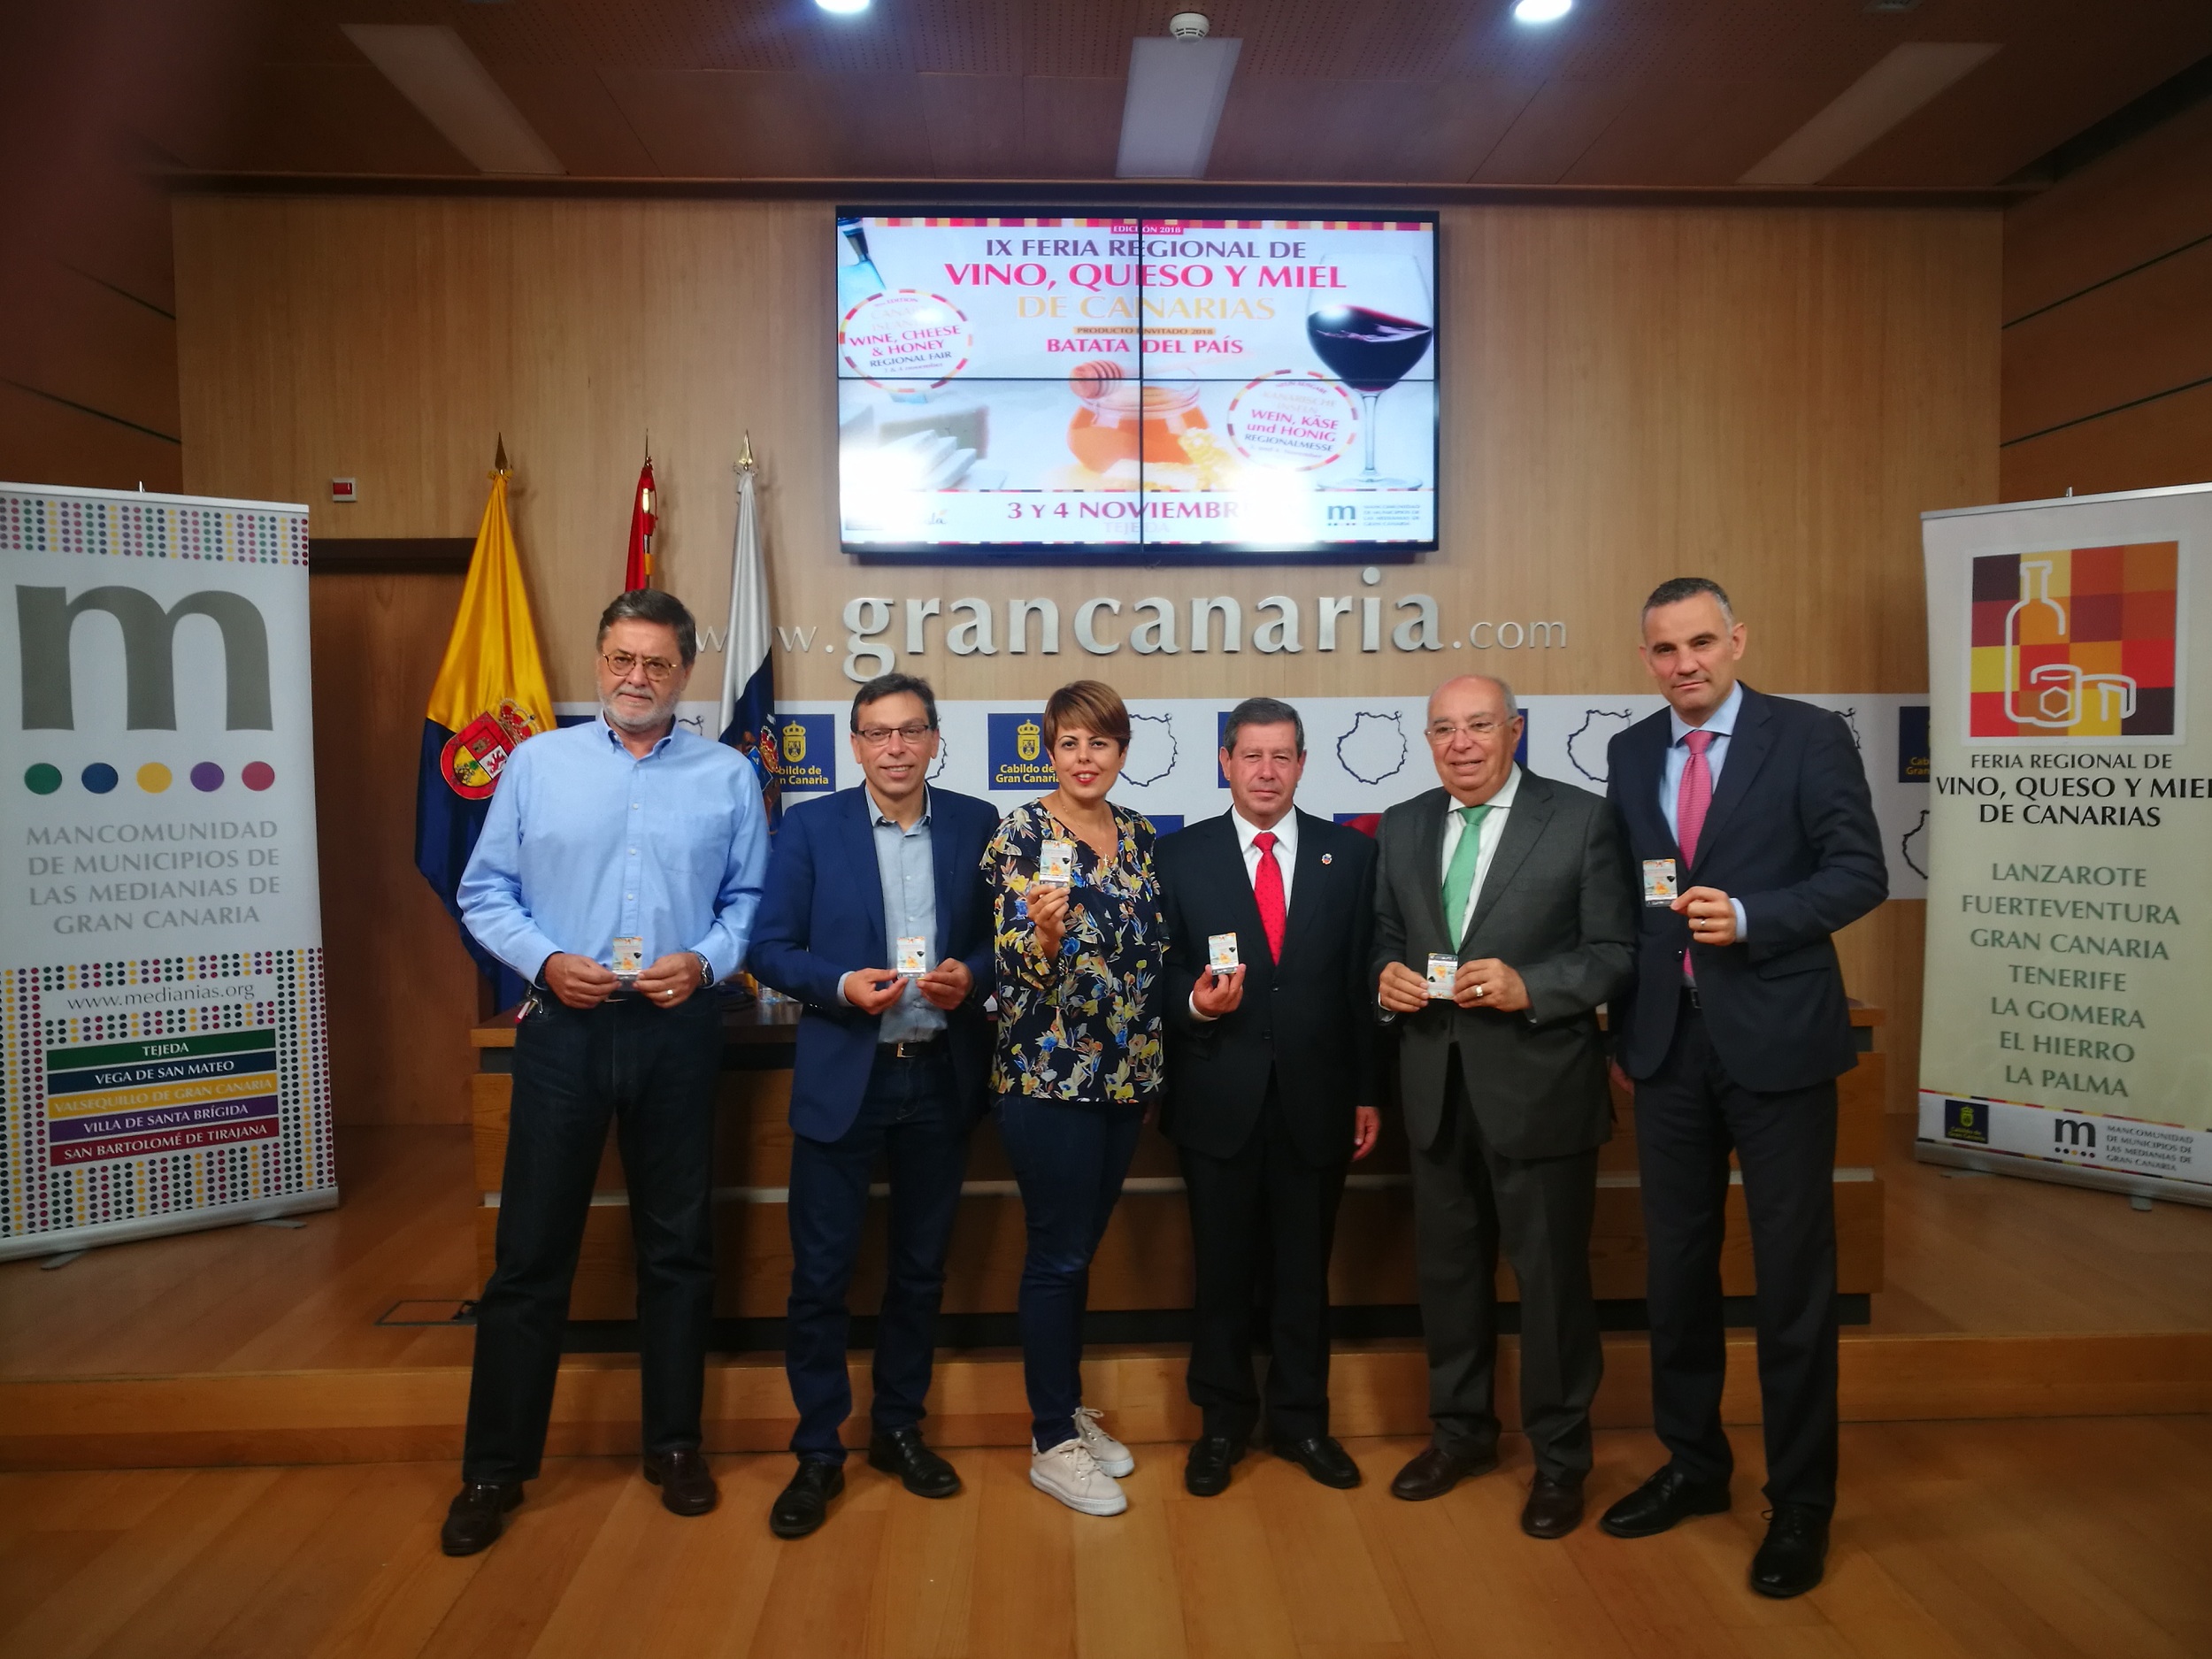 La batata del país será la estrella invitada a la Feria Regional del Vino, Queso y Miel en Gran Canaria 